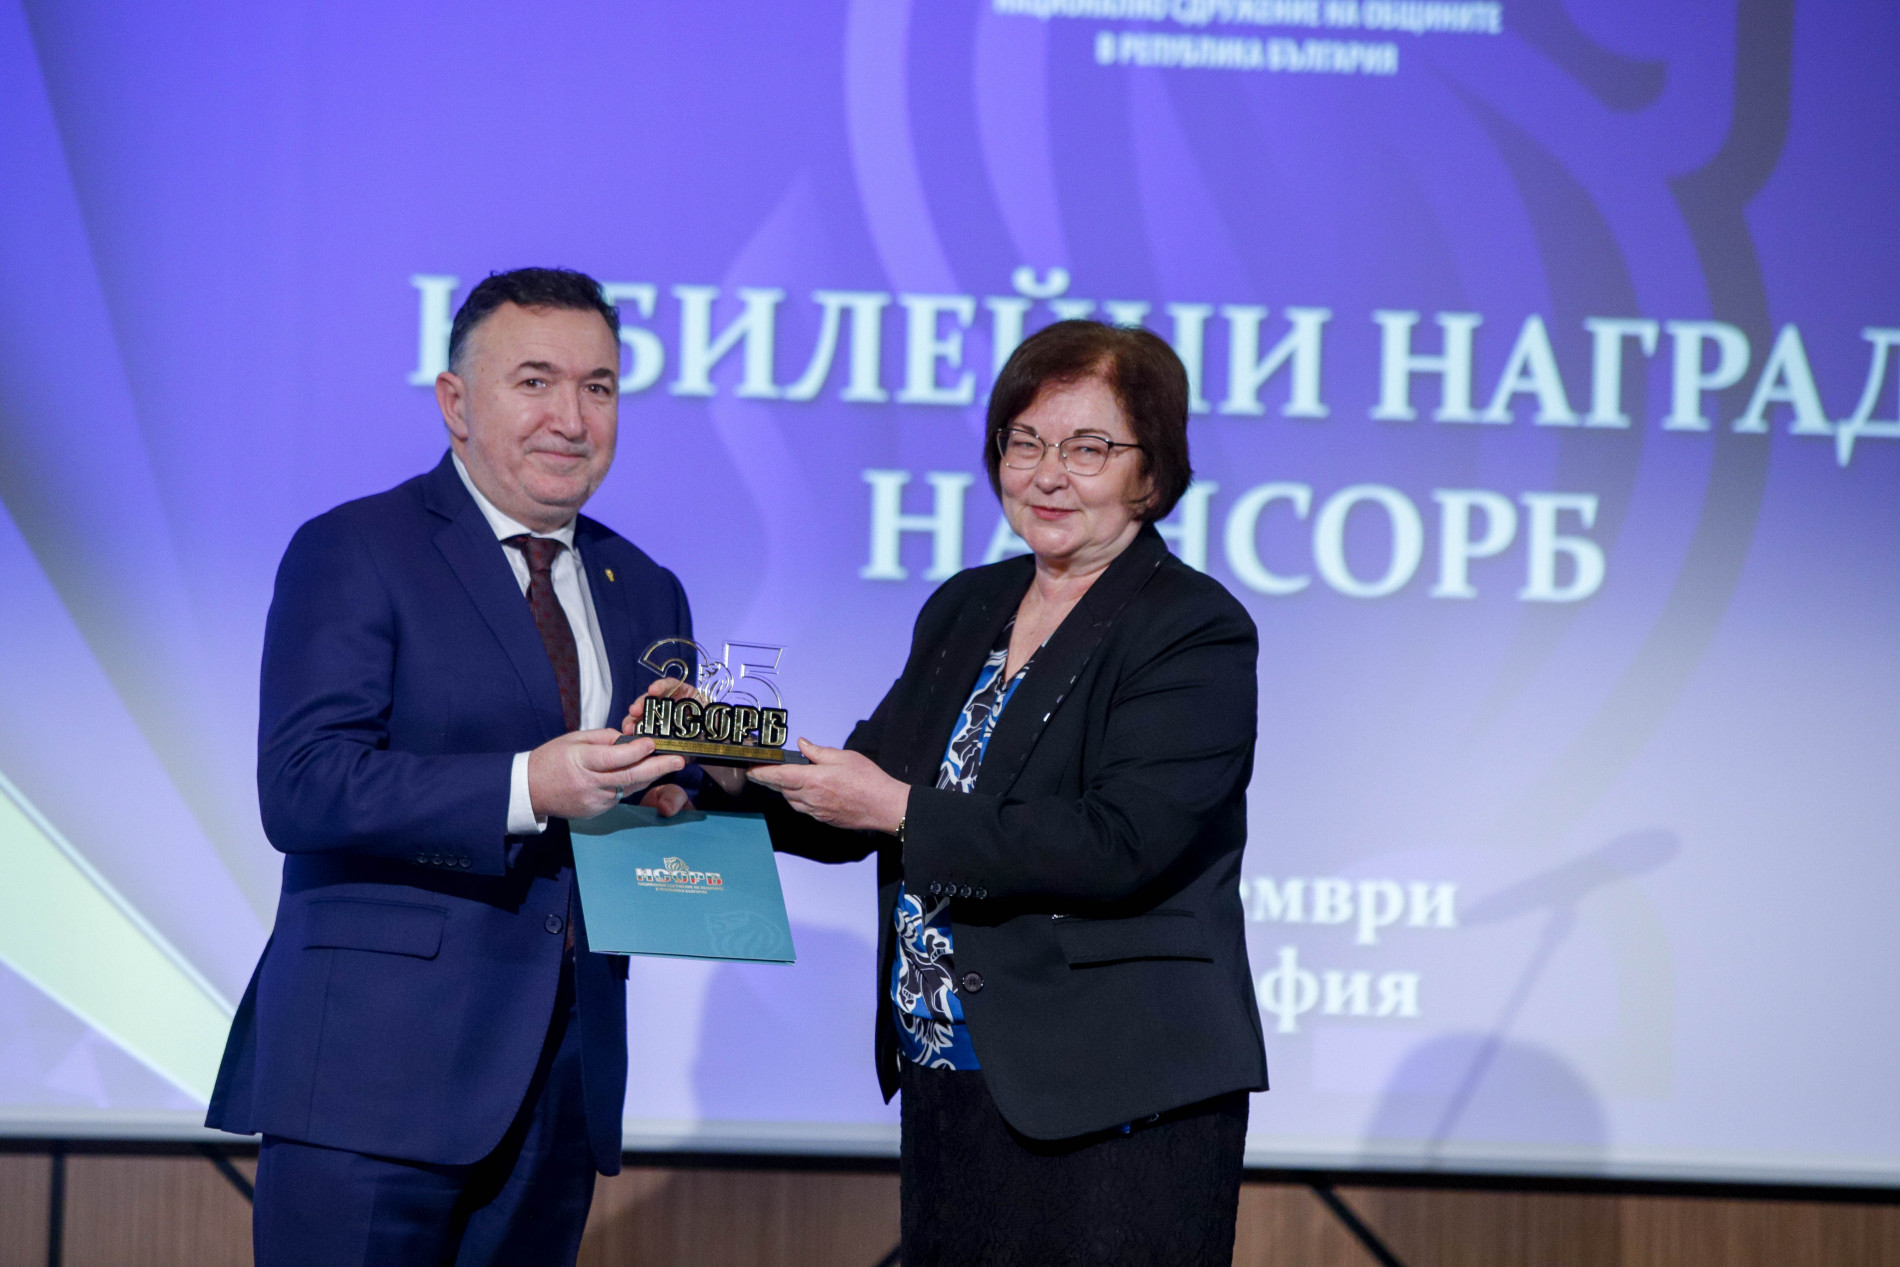 Д-р Емил Кабаиванов с отличие за цялостен принос за развитието на НСОРБ